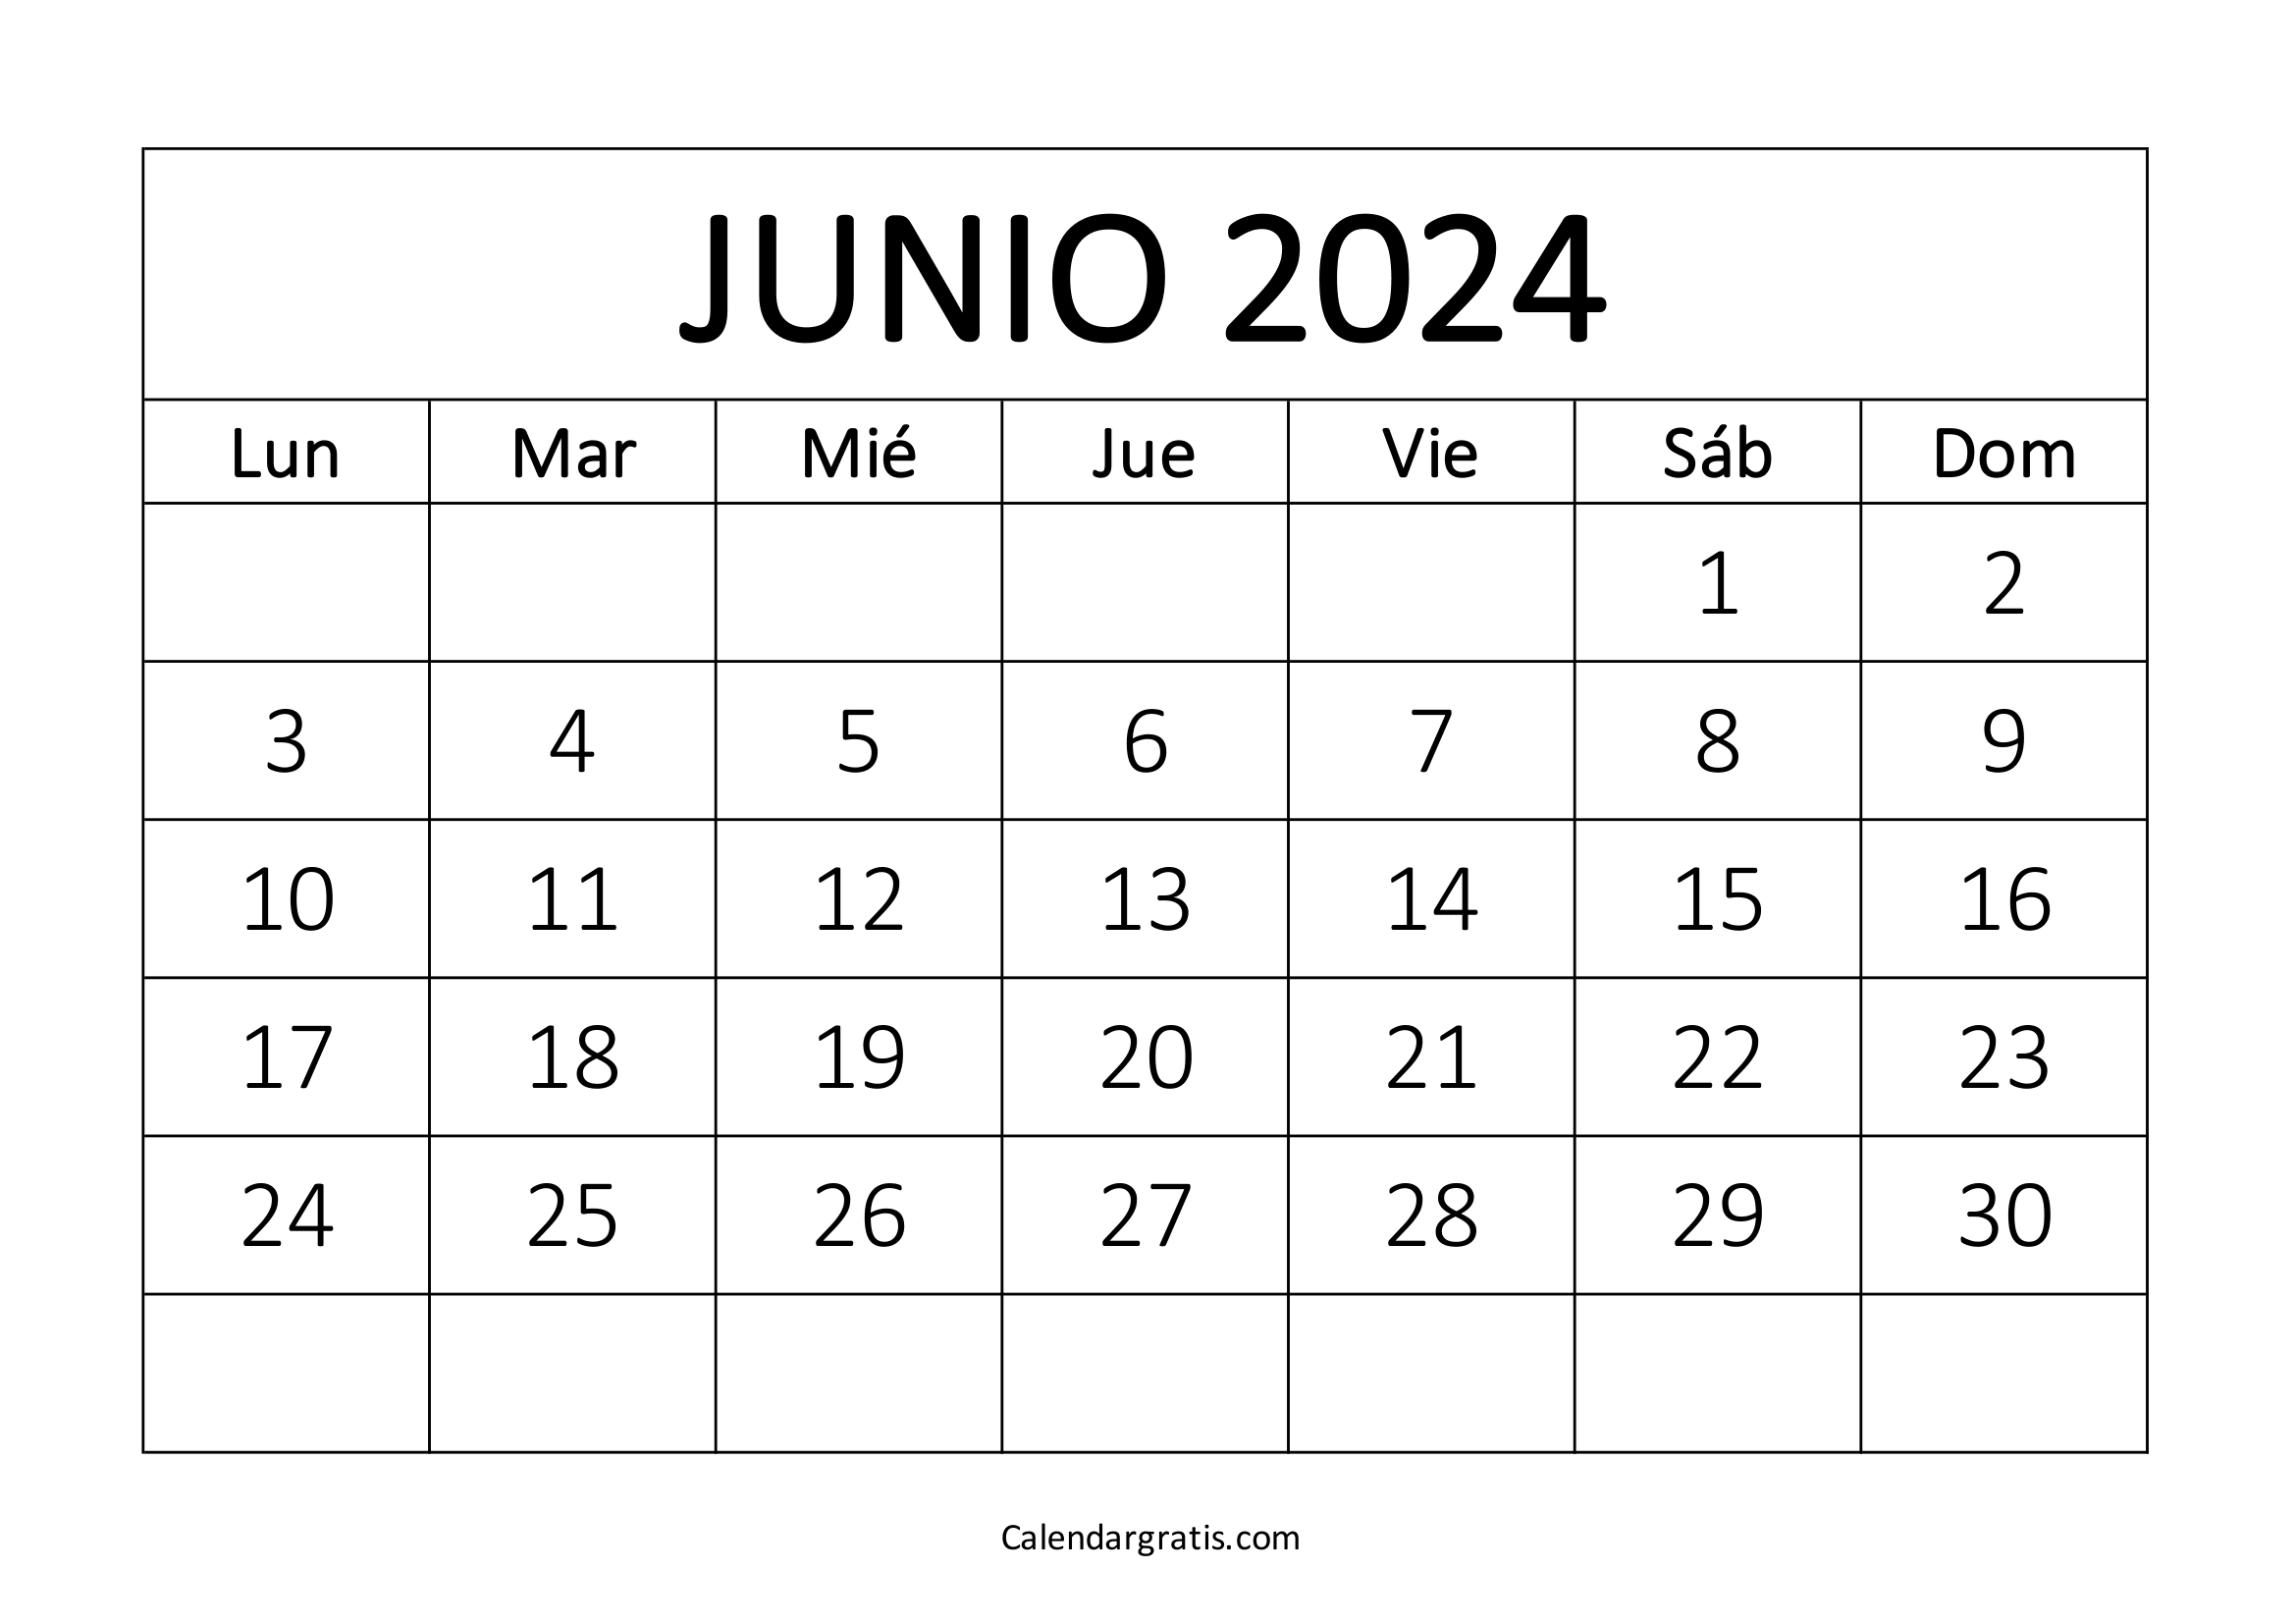 Calendario junio 2024 para imprimir gratis